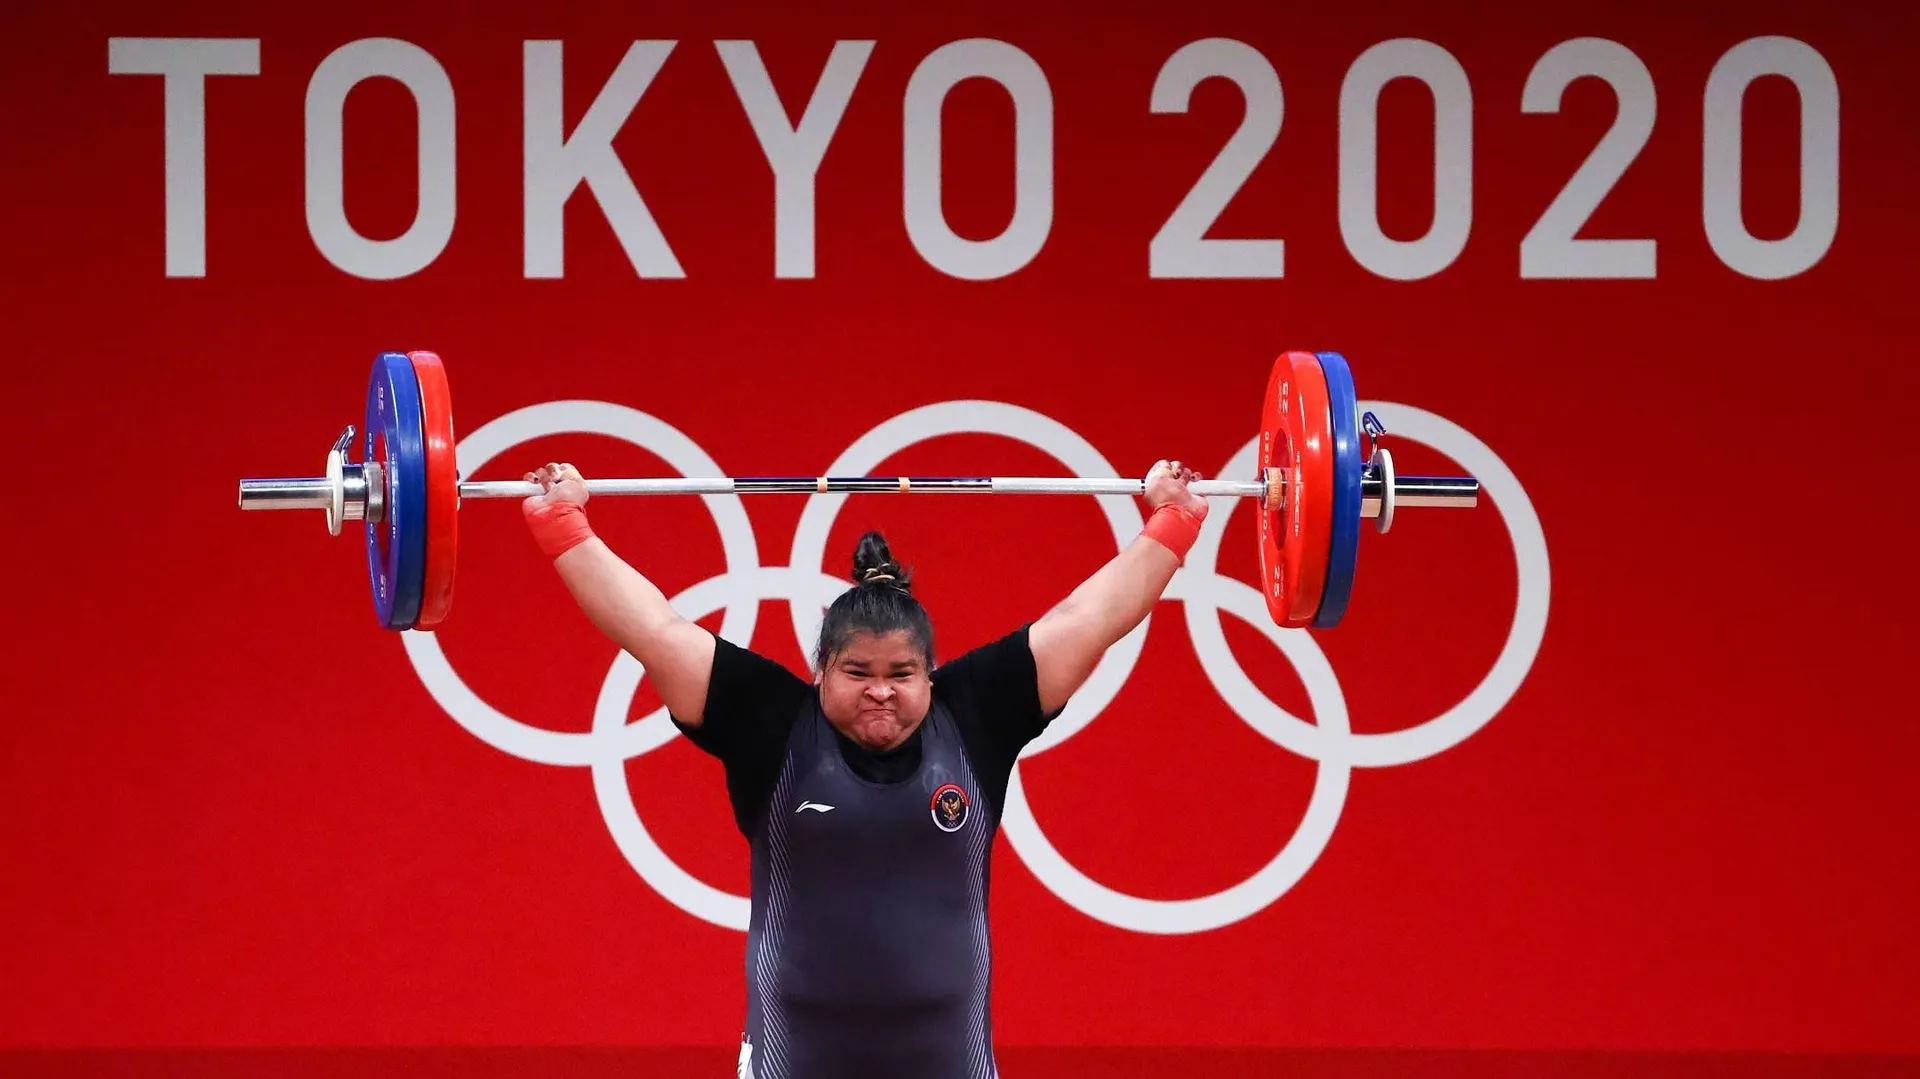 Gaya Atlet Perempuan Paling Mencuri Perhatian di Olimpiade Tokyo 2020